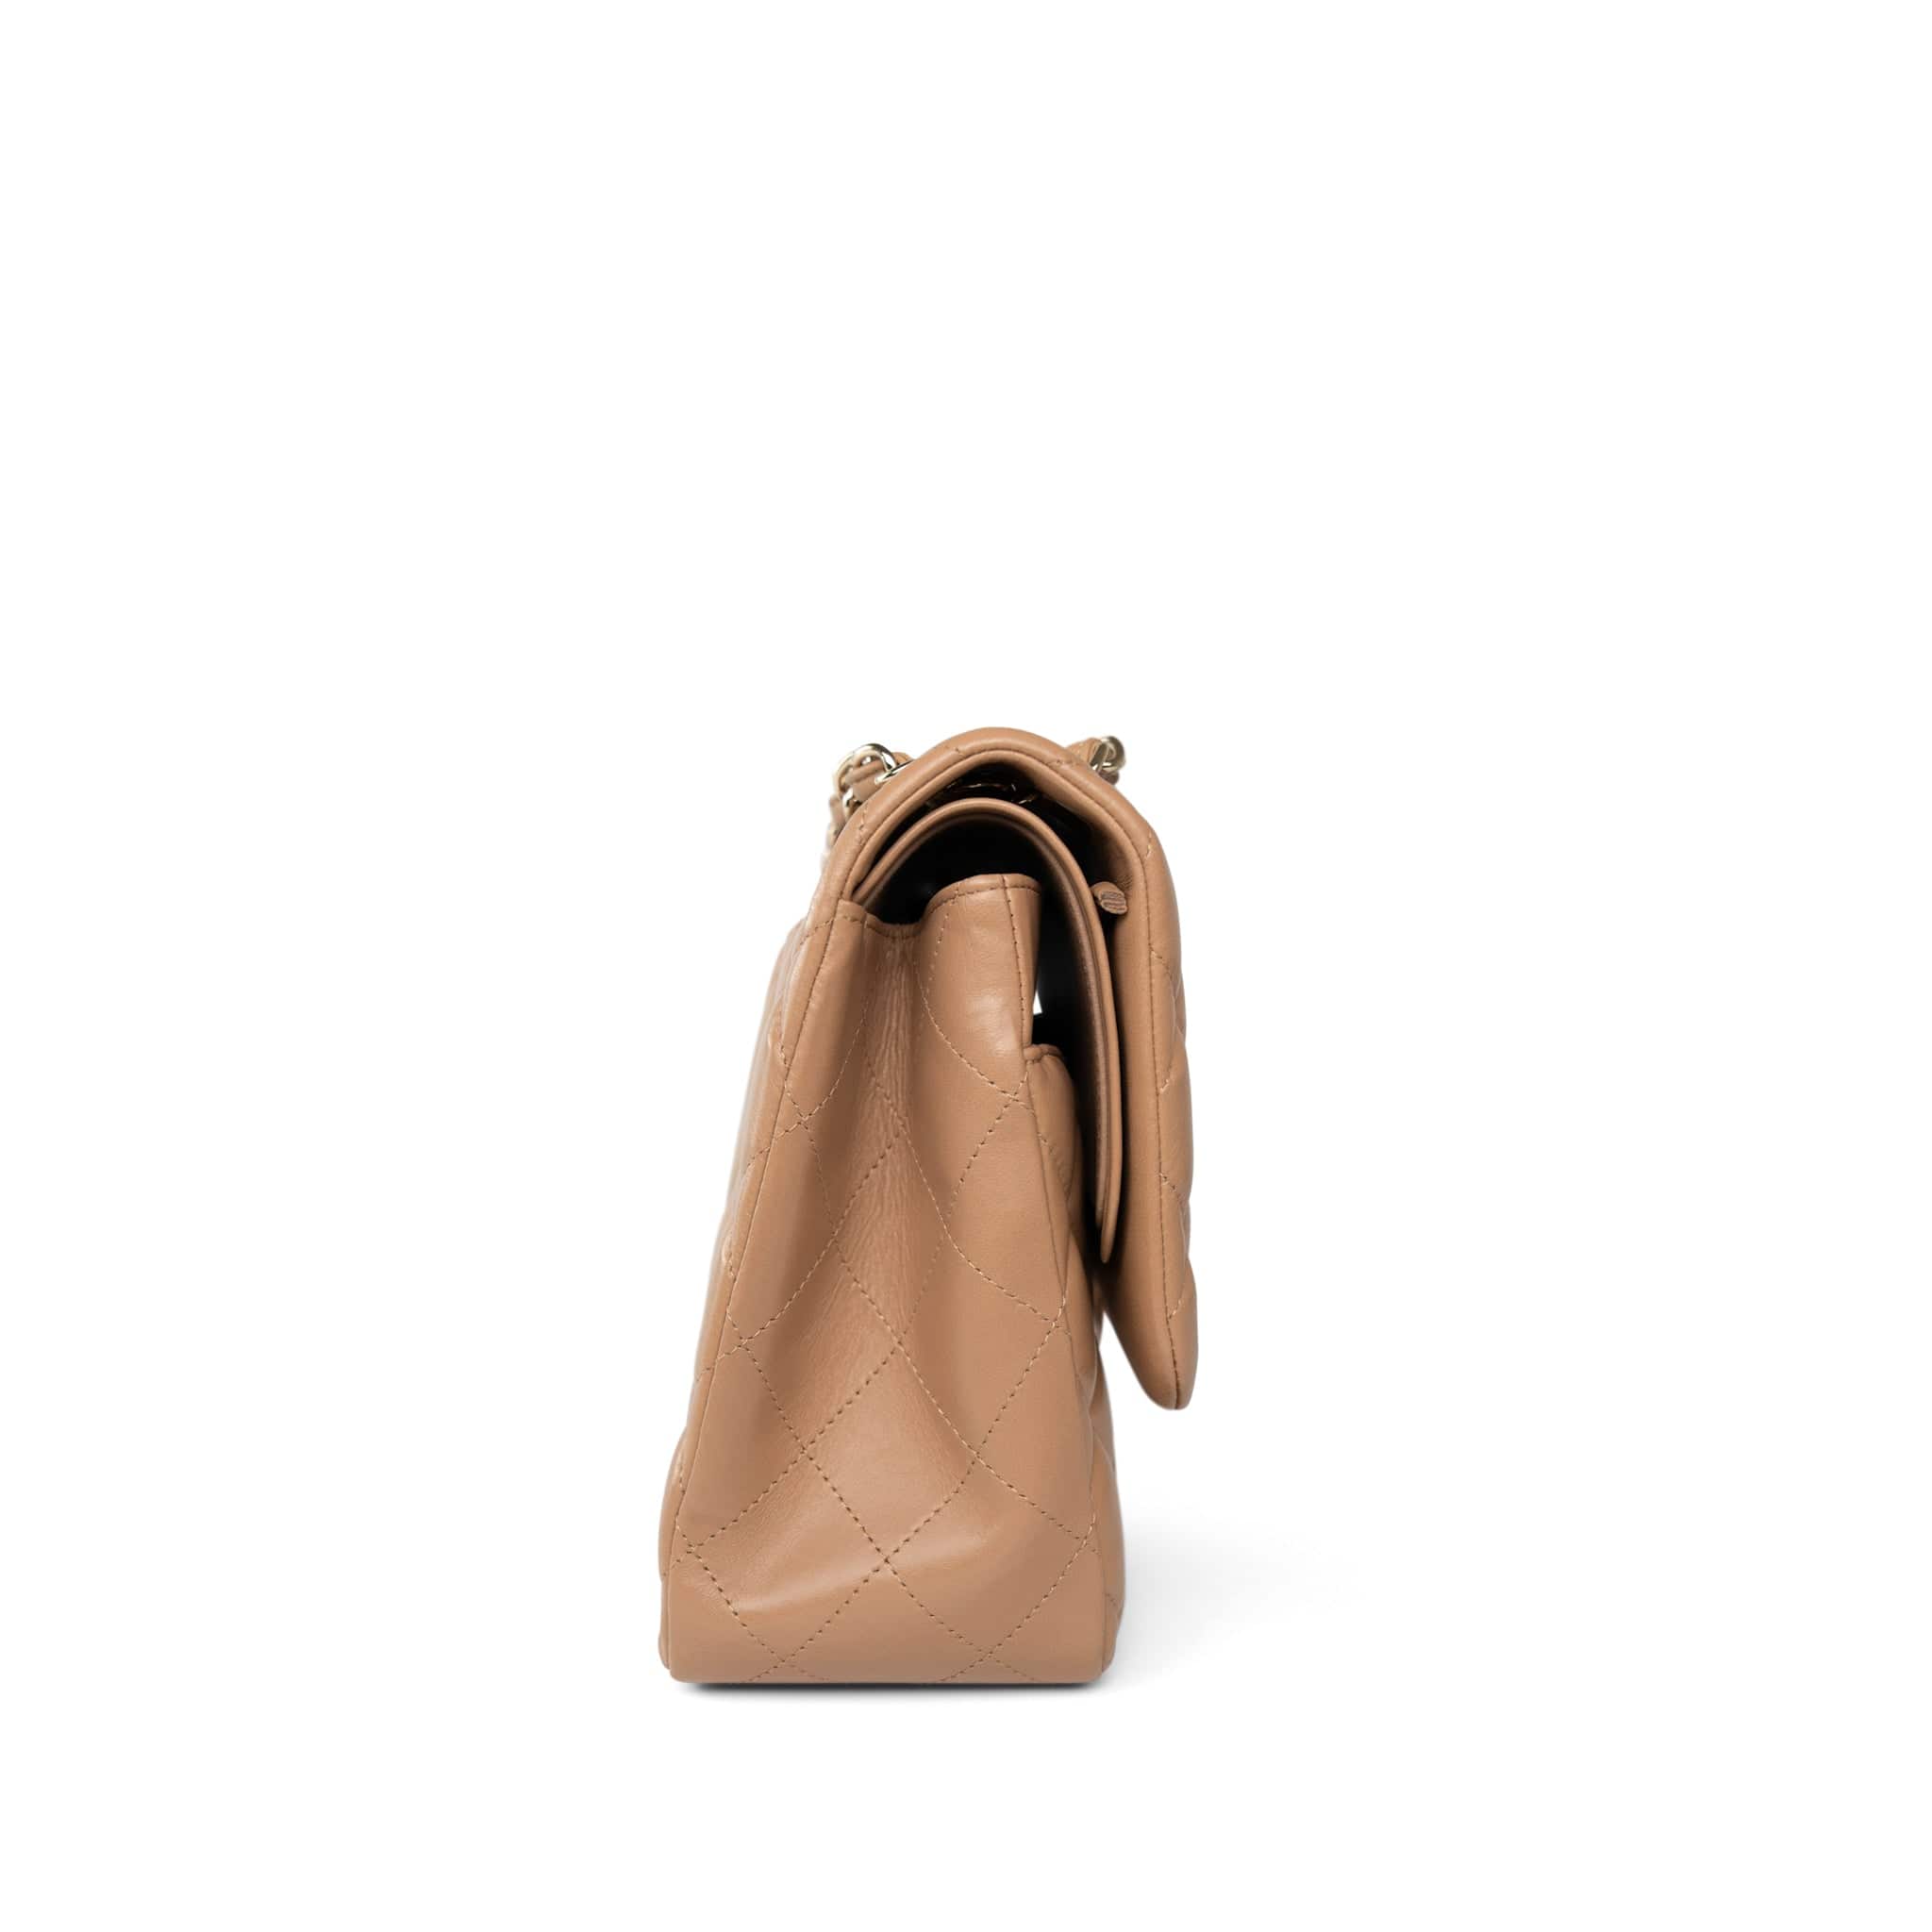 CHANEL Handbag Beige Dark Beige / Caramel Lambskin Quilted Jumbo Classic Flap Light Gold Hardware - Redeluxe